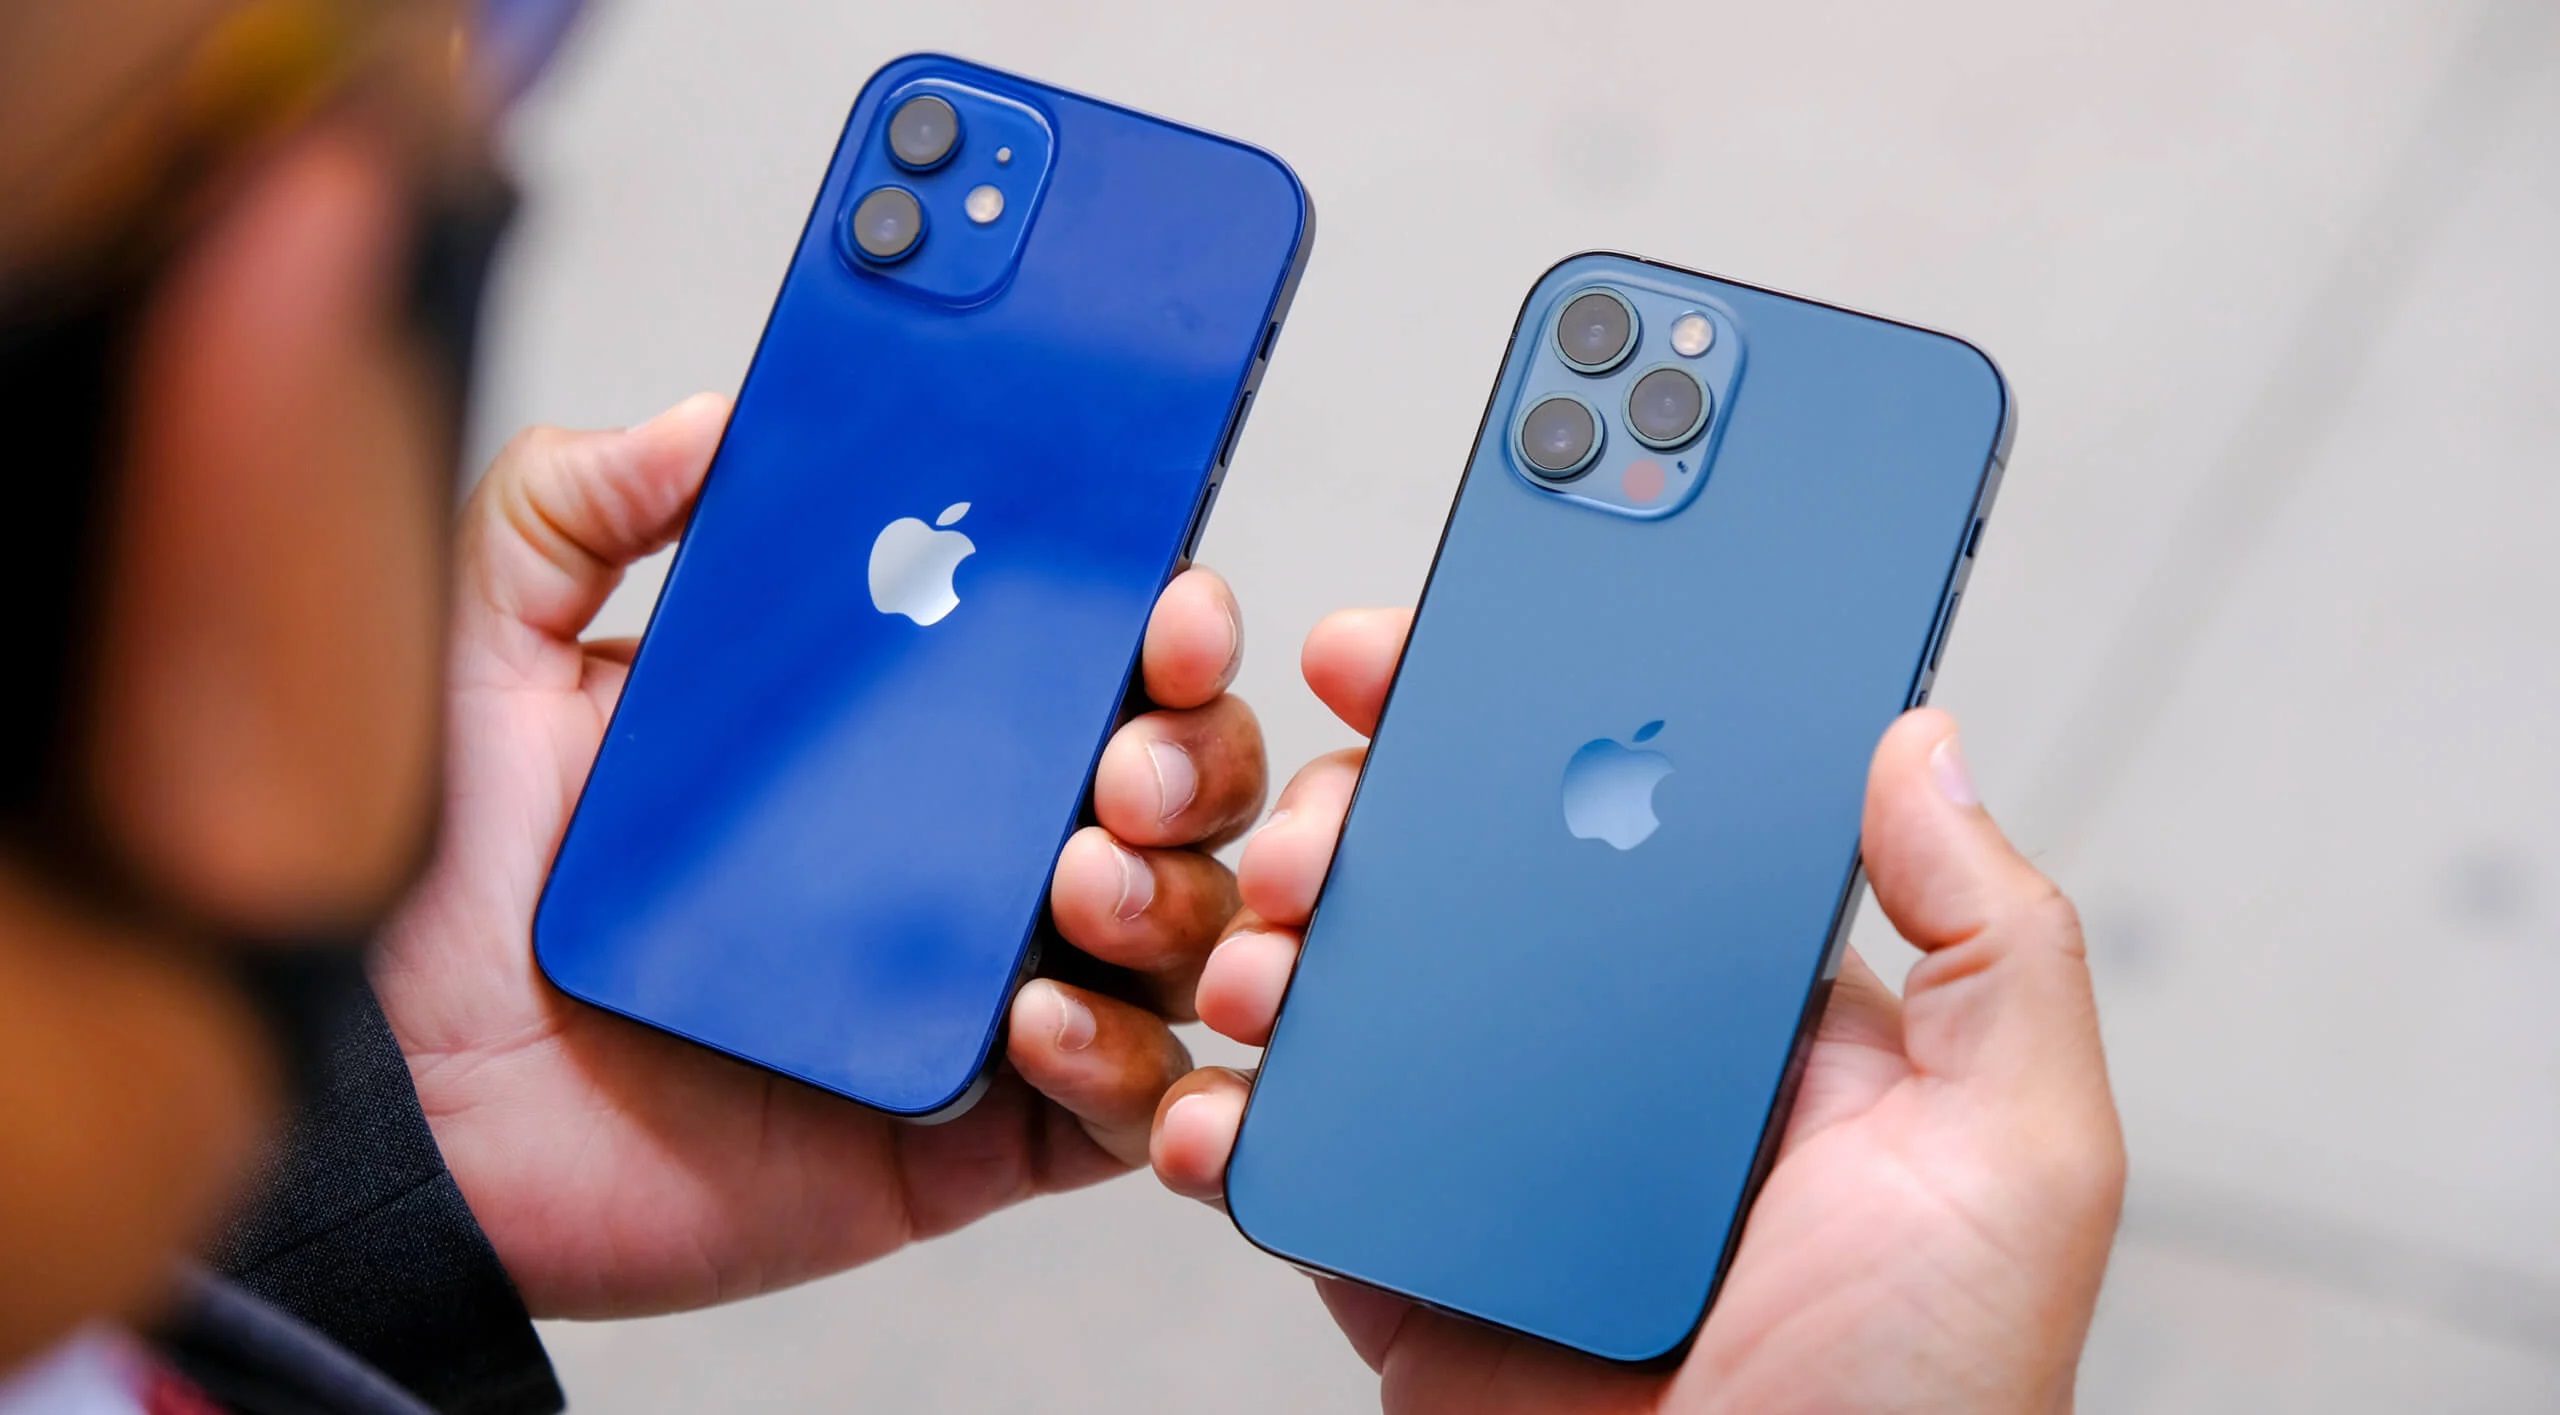 Apple admite un defecto grave en el iPhone 12 y el iPhone 12 Pro y promete reparar los teléfonos inteligentes de forma gratuita